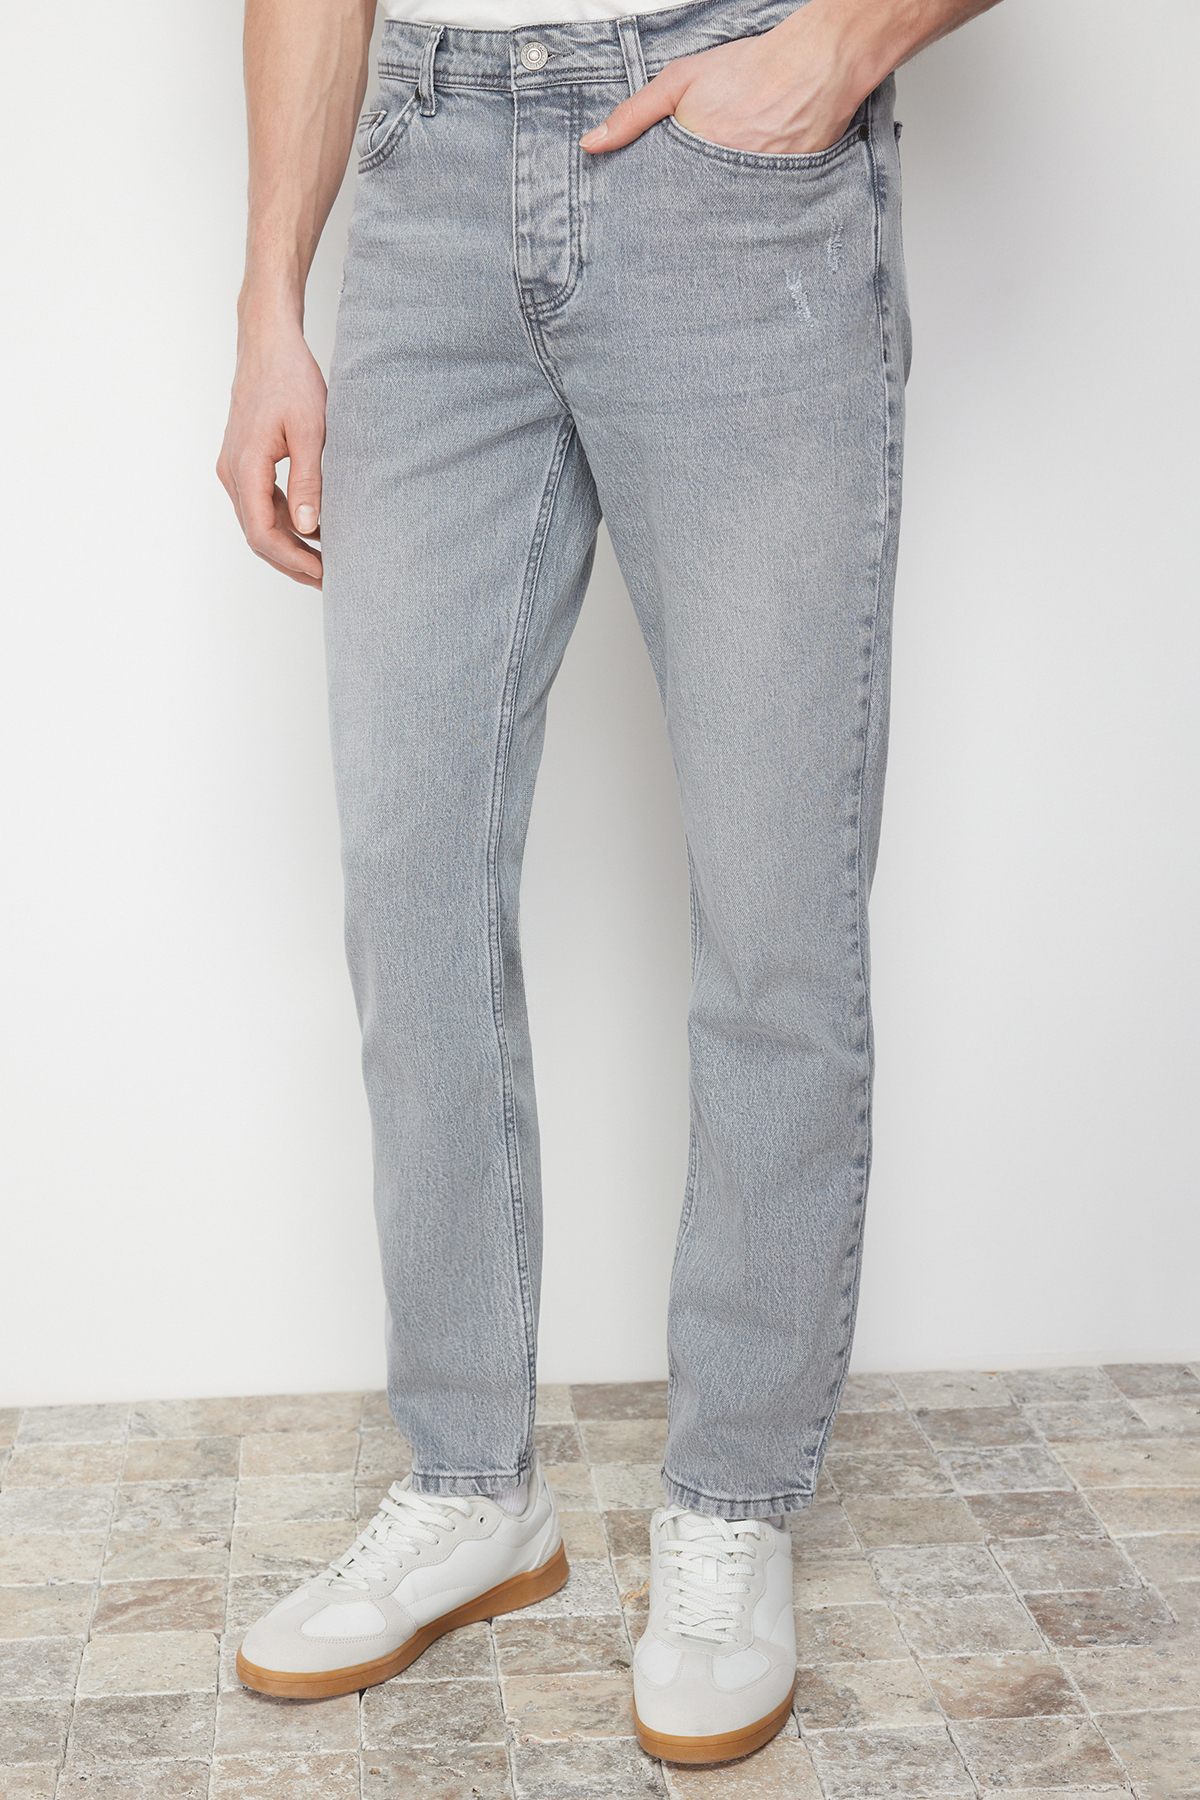 Trendyol Gray Slim Fit Wear Jeans Denim Trousers